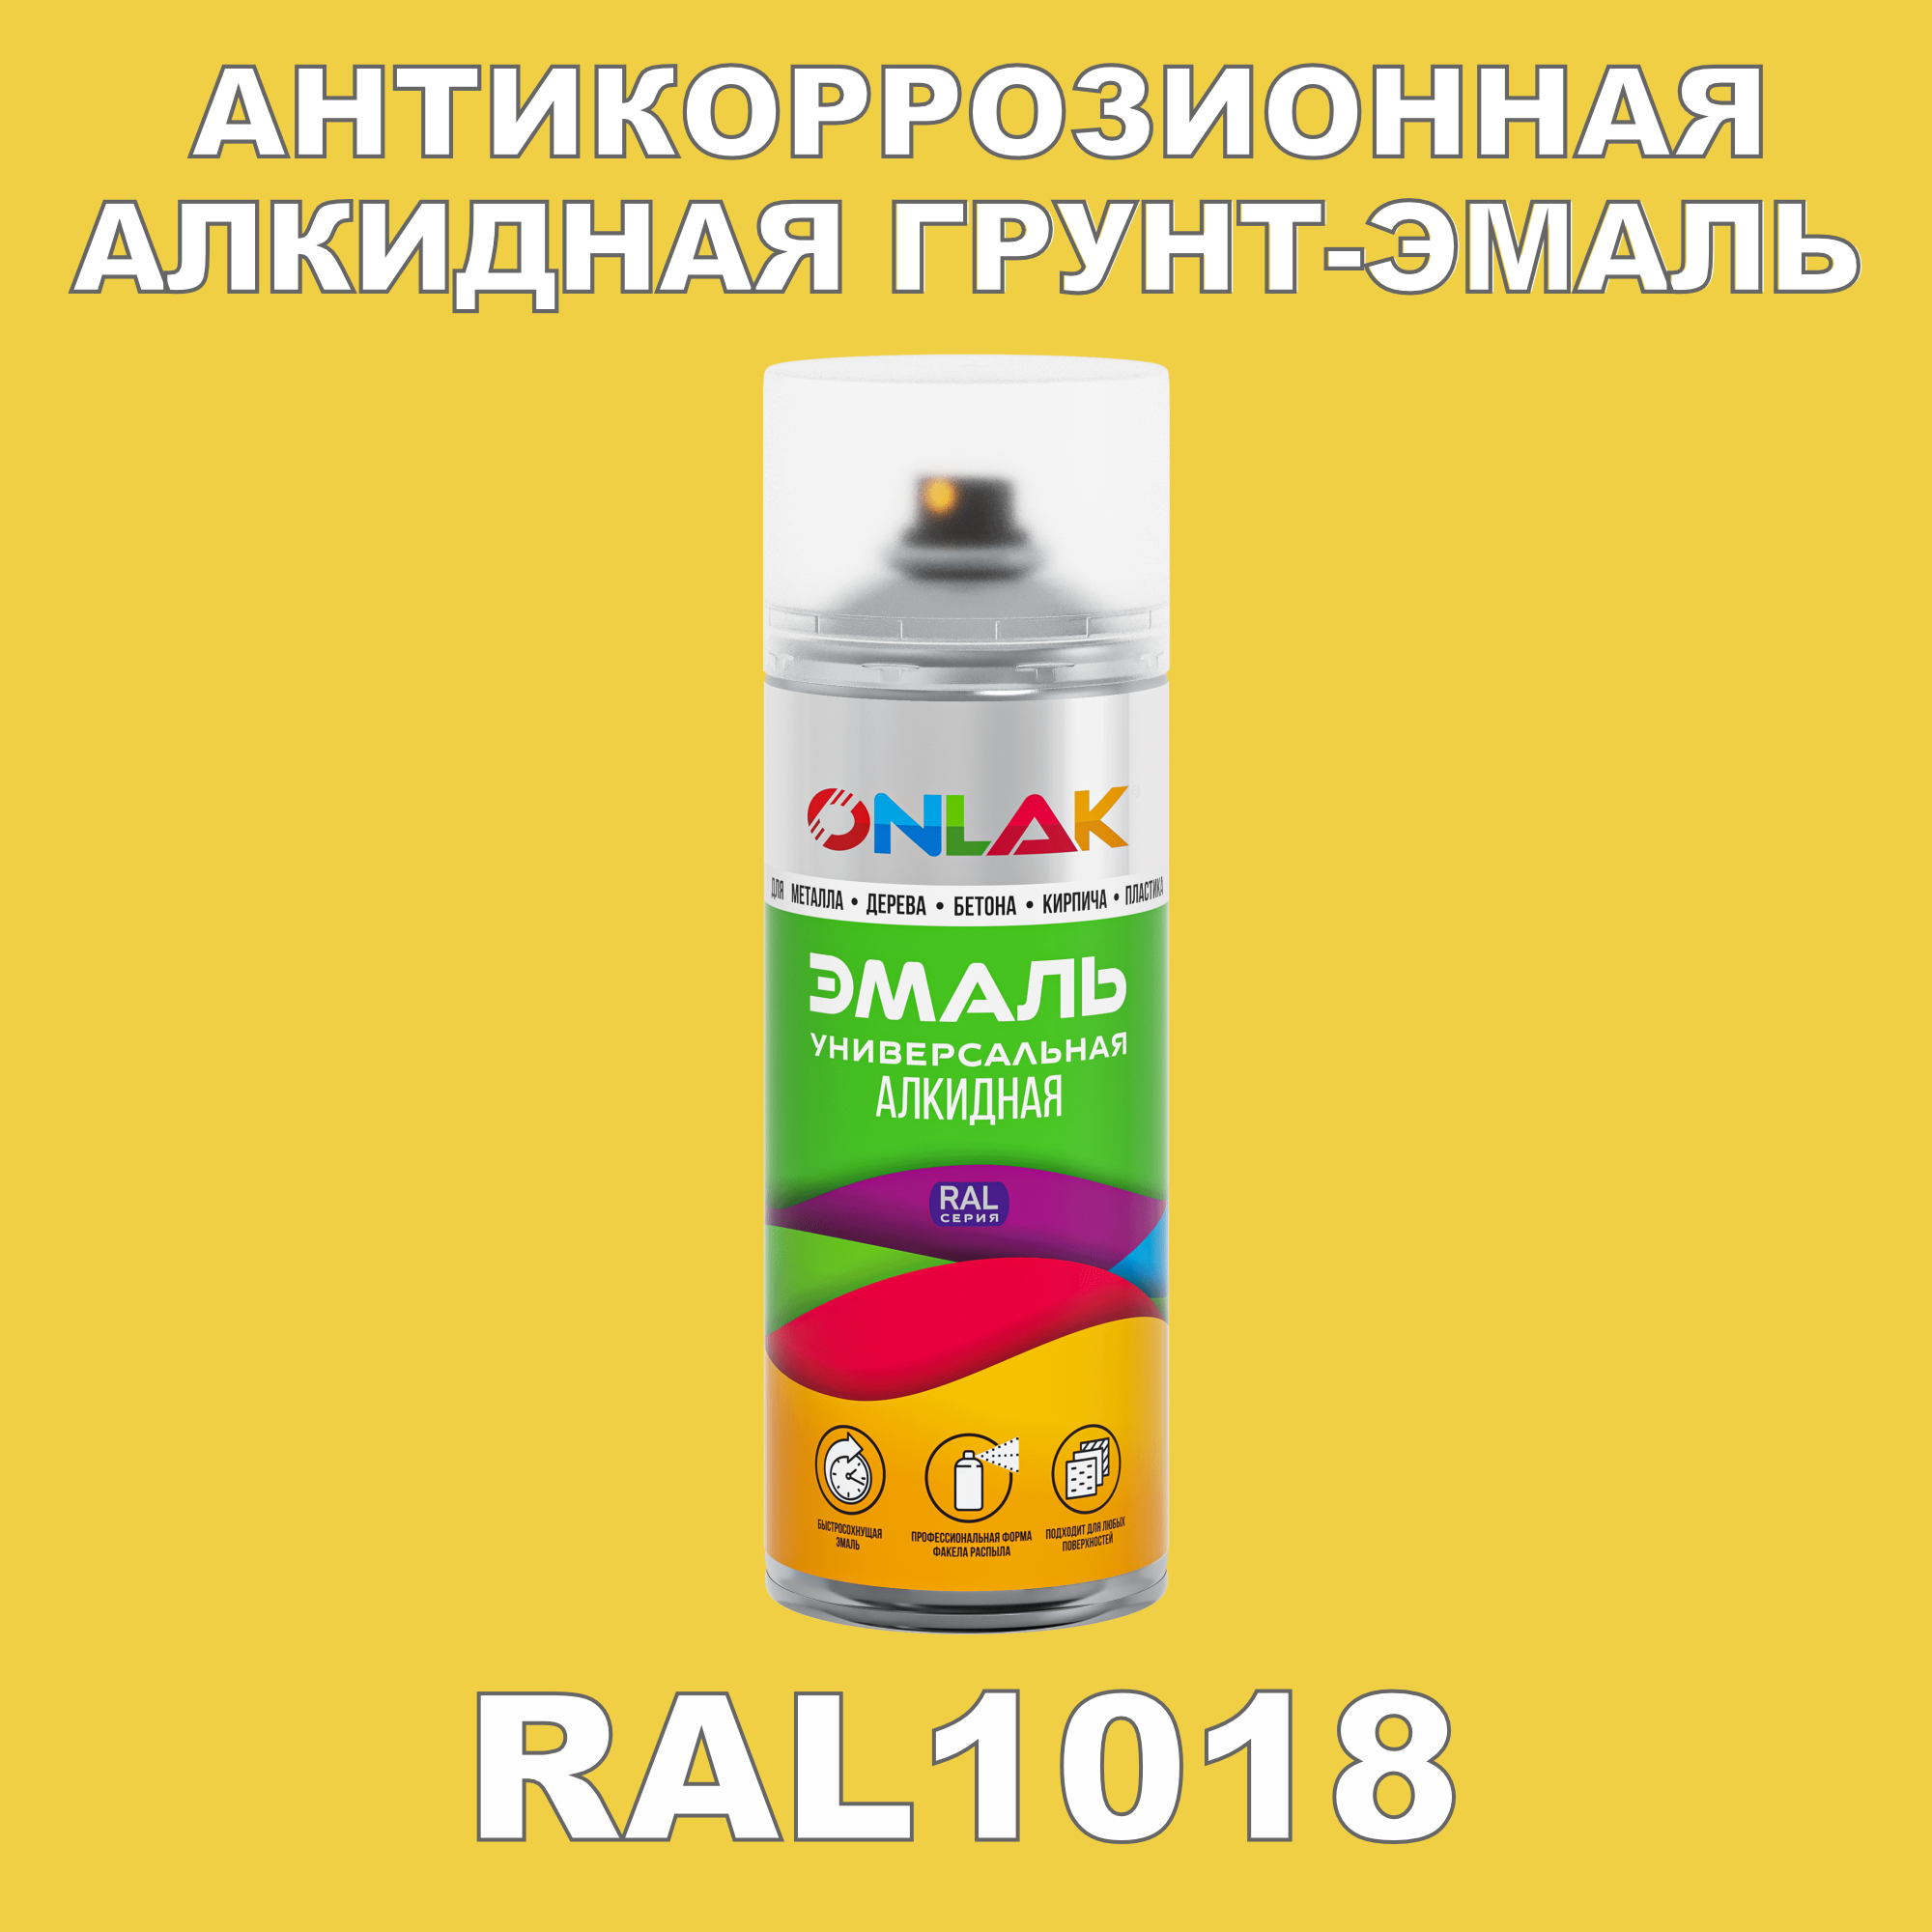 Антикоррозионная грунт-эмаль ONLAK RAL1018 полуматовая для металла и защиты от ржавчины